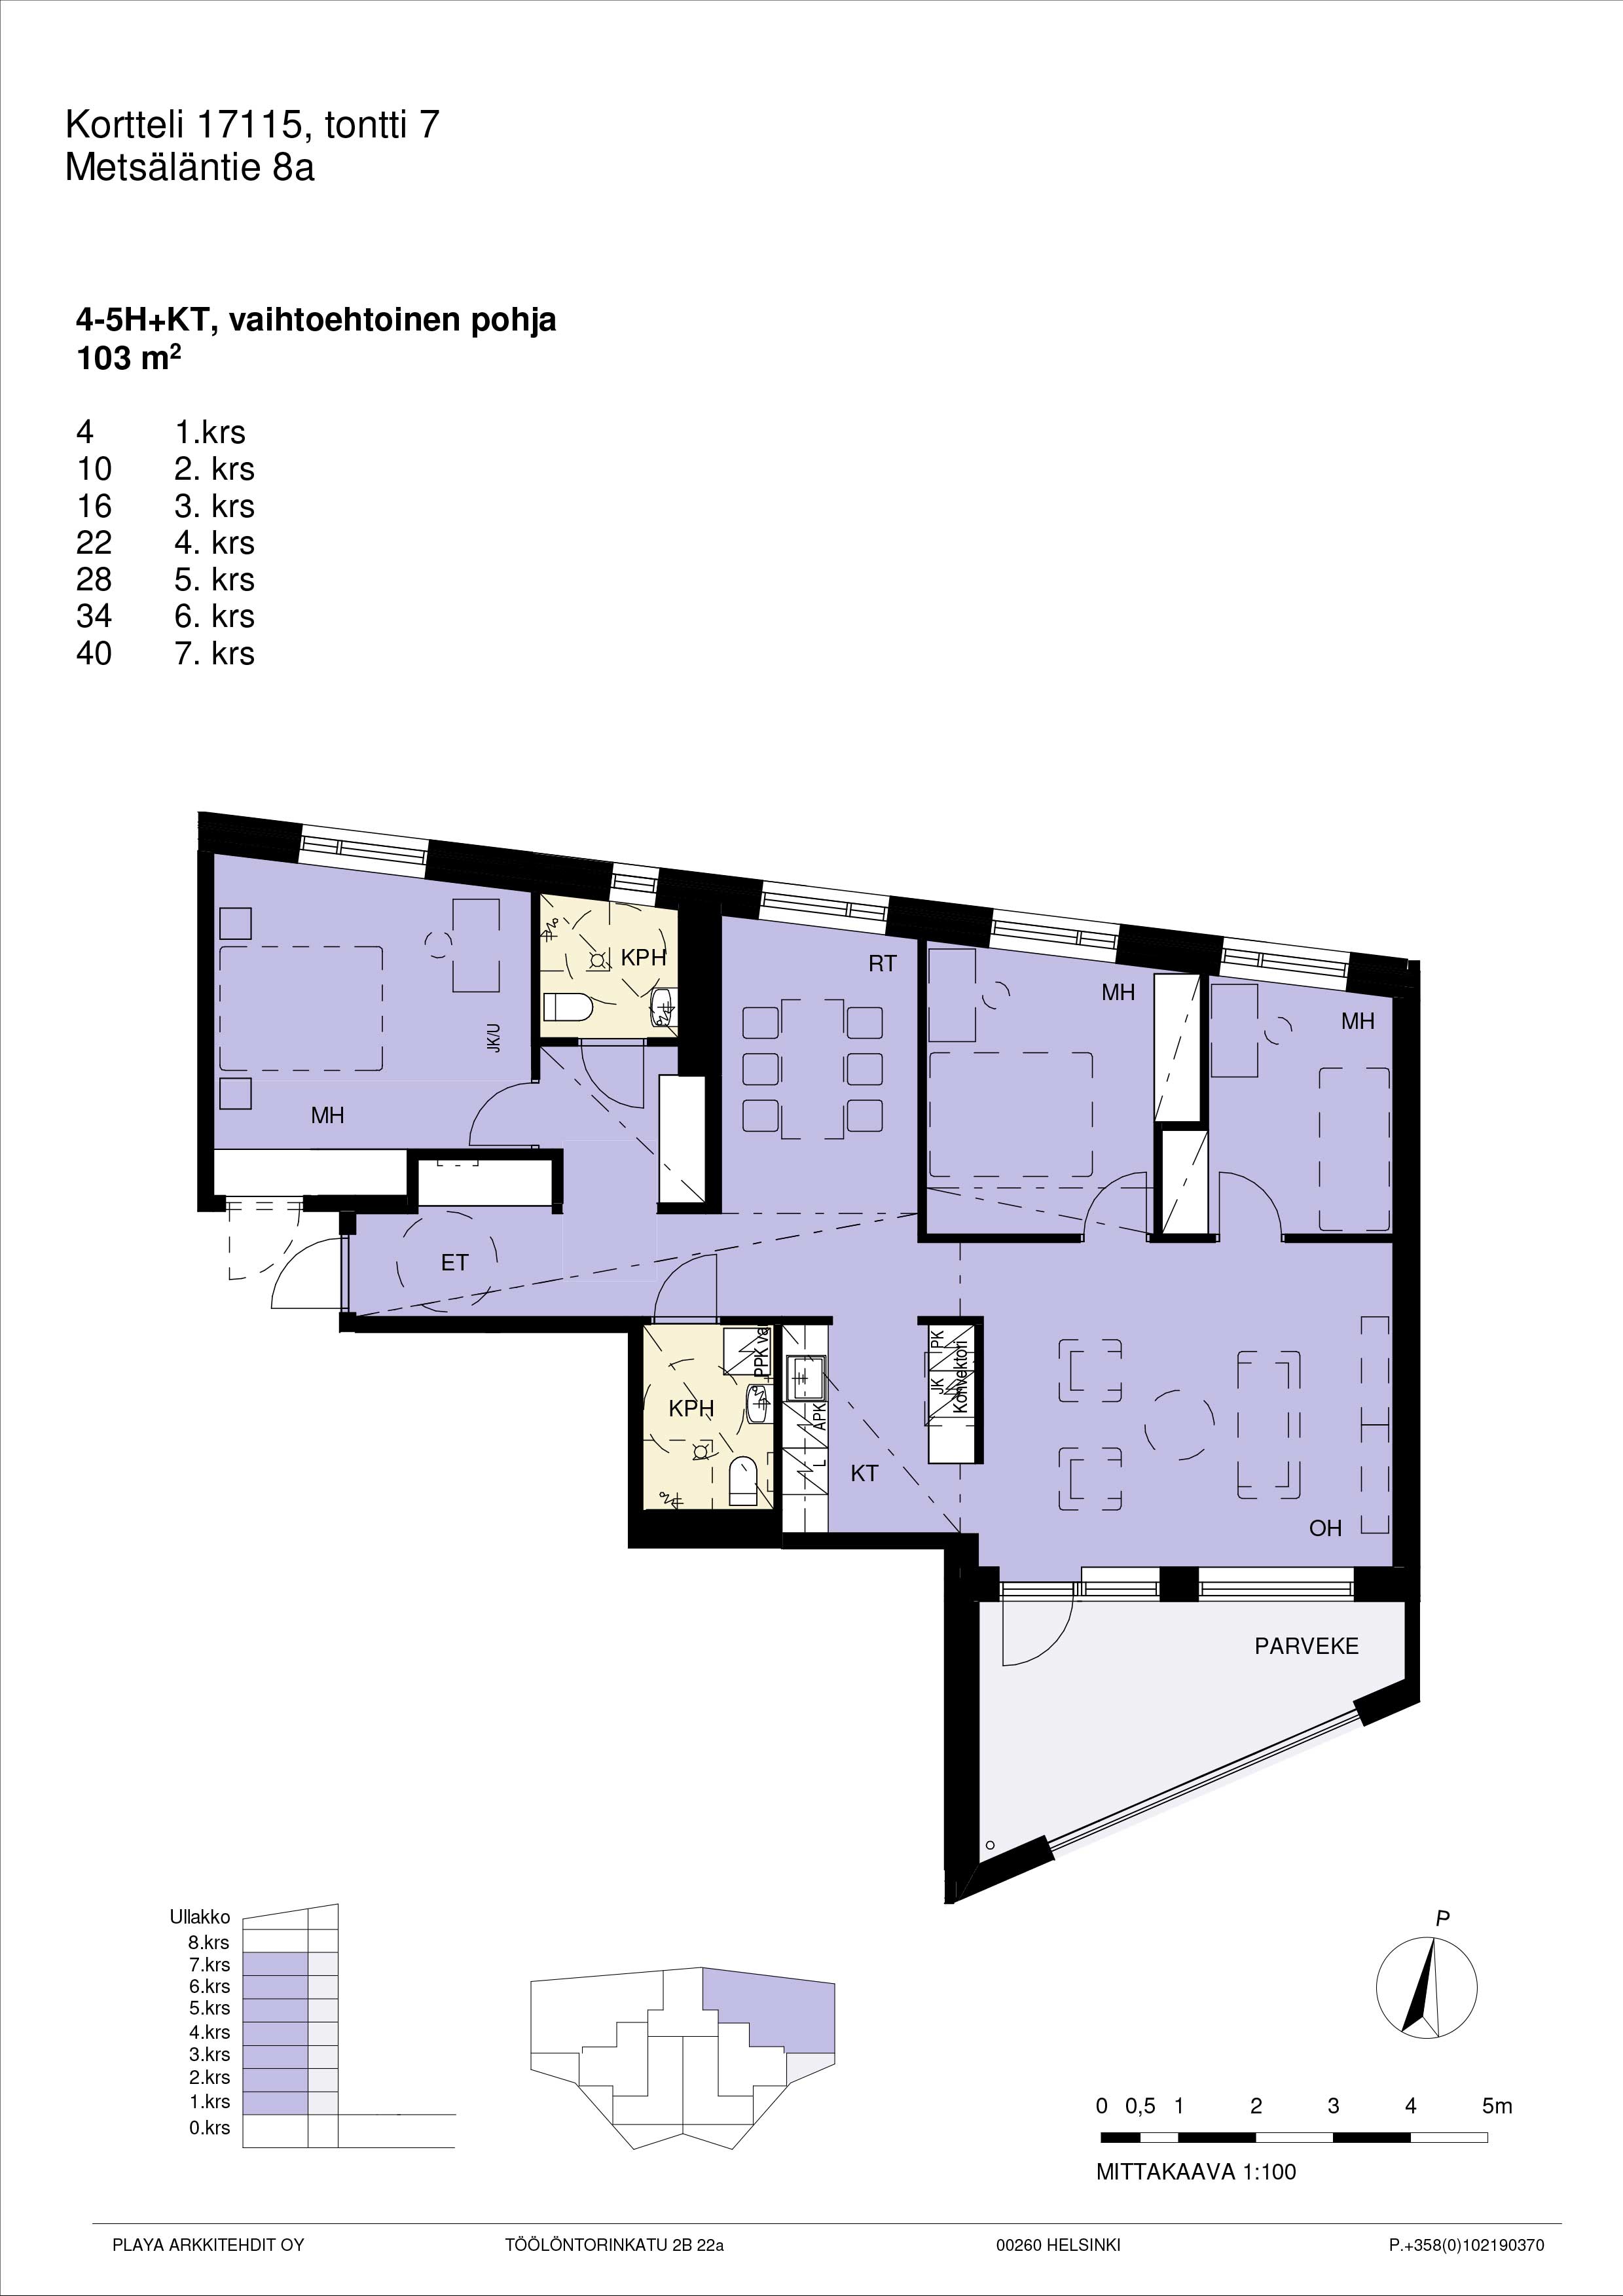 Pohjakuva A40, 4-5h+kt yhtenäinen suuri asunto 103 m2